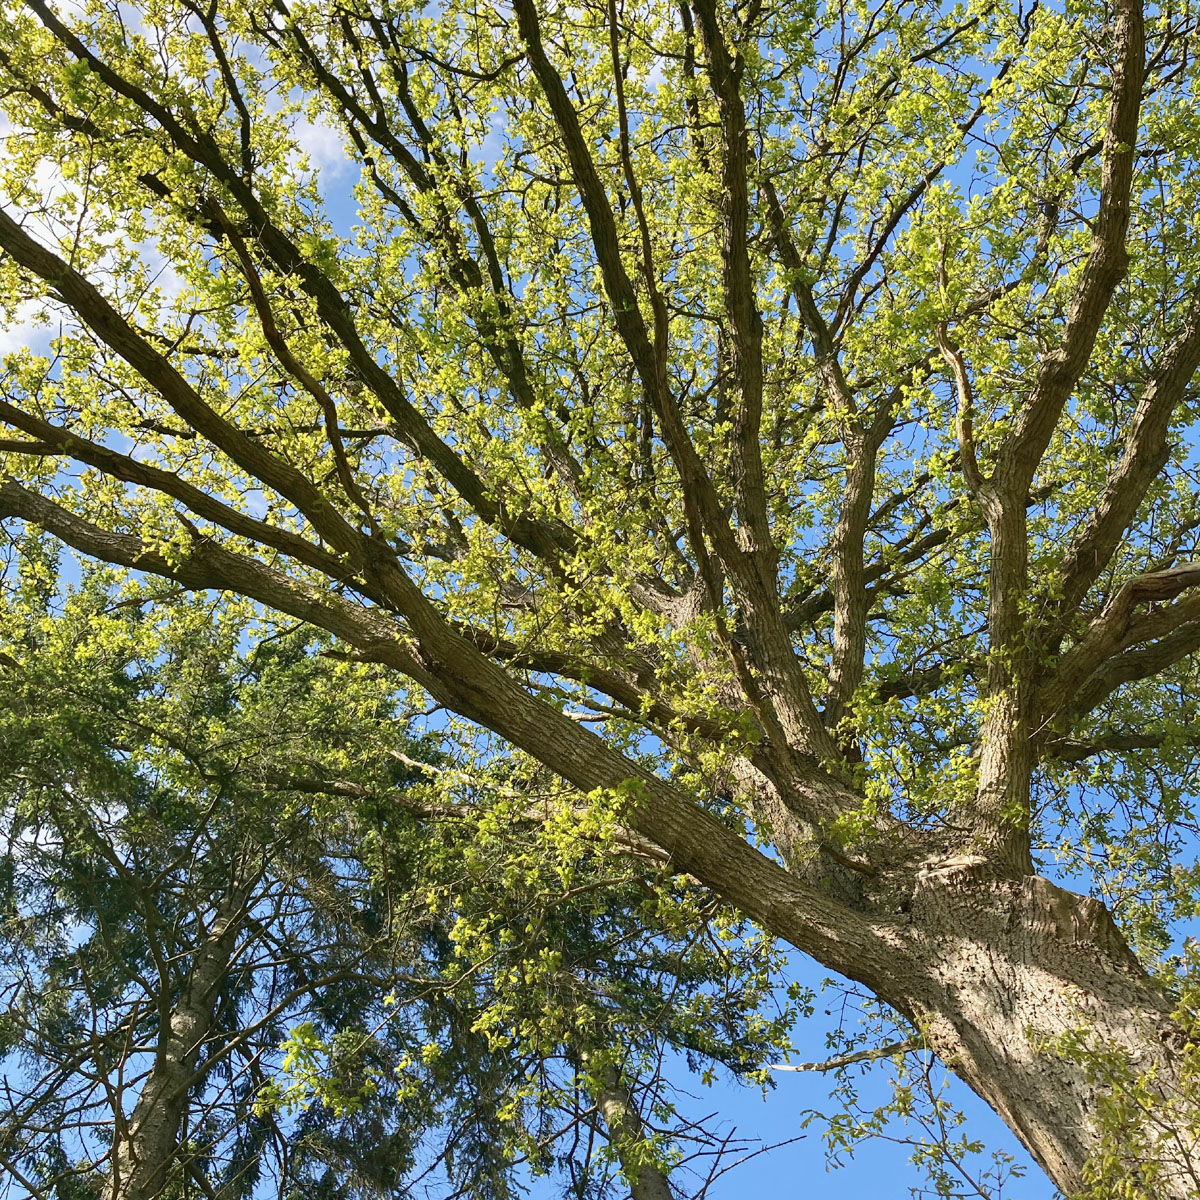 Blick in eine Baumkrone gegen den blauen Himmel, die Blätter des Baums sind jung und hellgrün